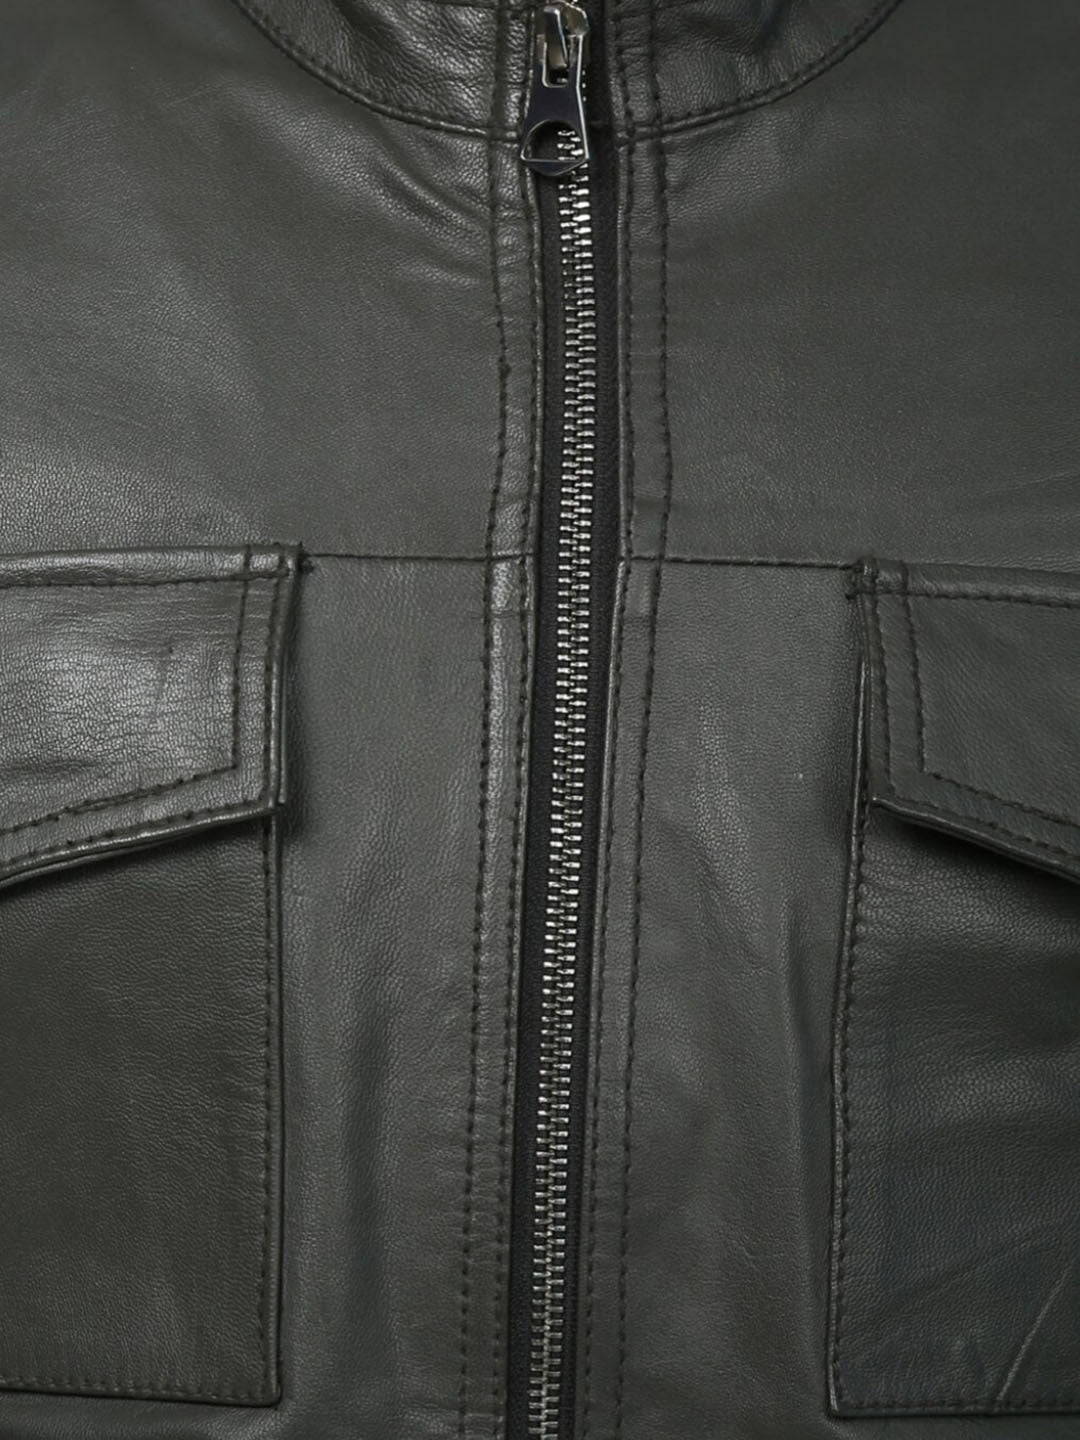 Men Leather Lightweight Biker Jacket | QAWACH